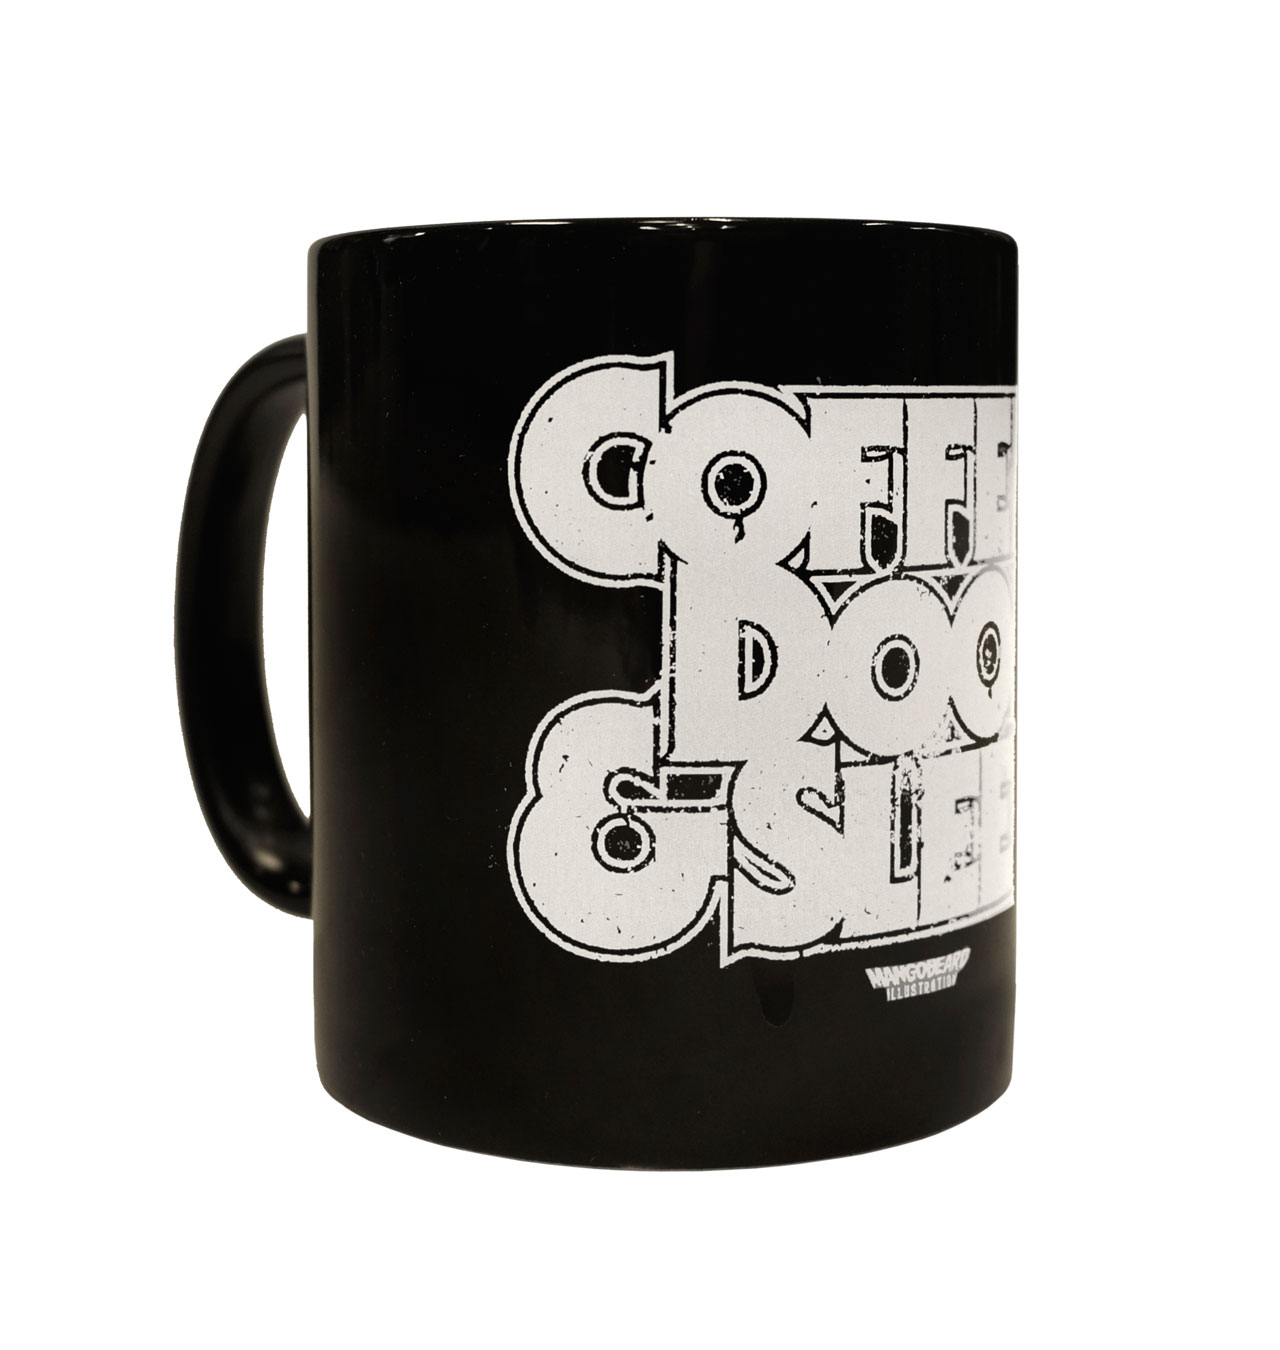 Mangobeard---Coffee--Doom--Sleep-Mug-1